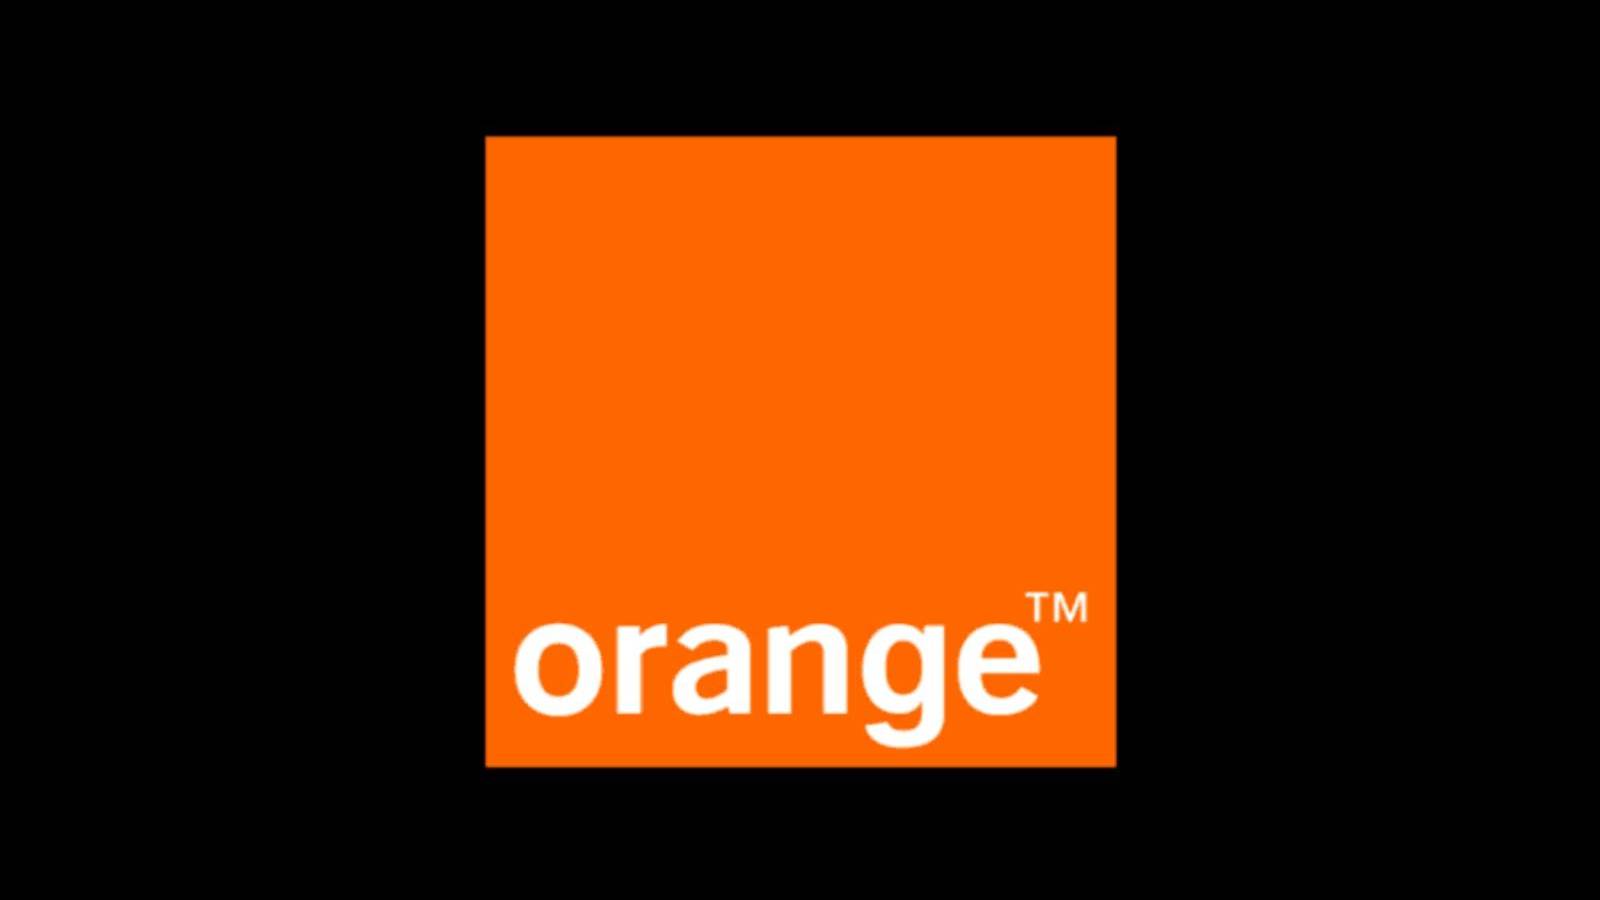 Oficjalny komunikat Orange Rumunia, o czym informuje dziś Rumunów